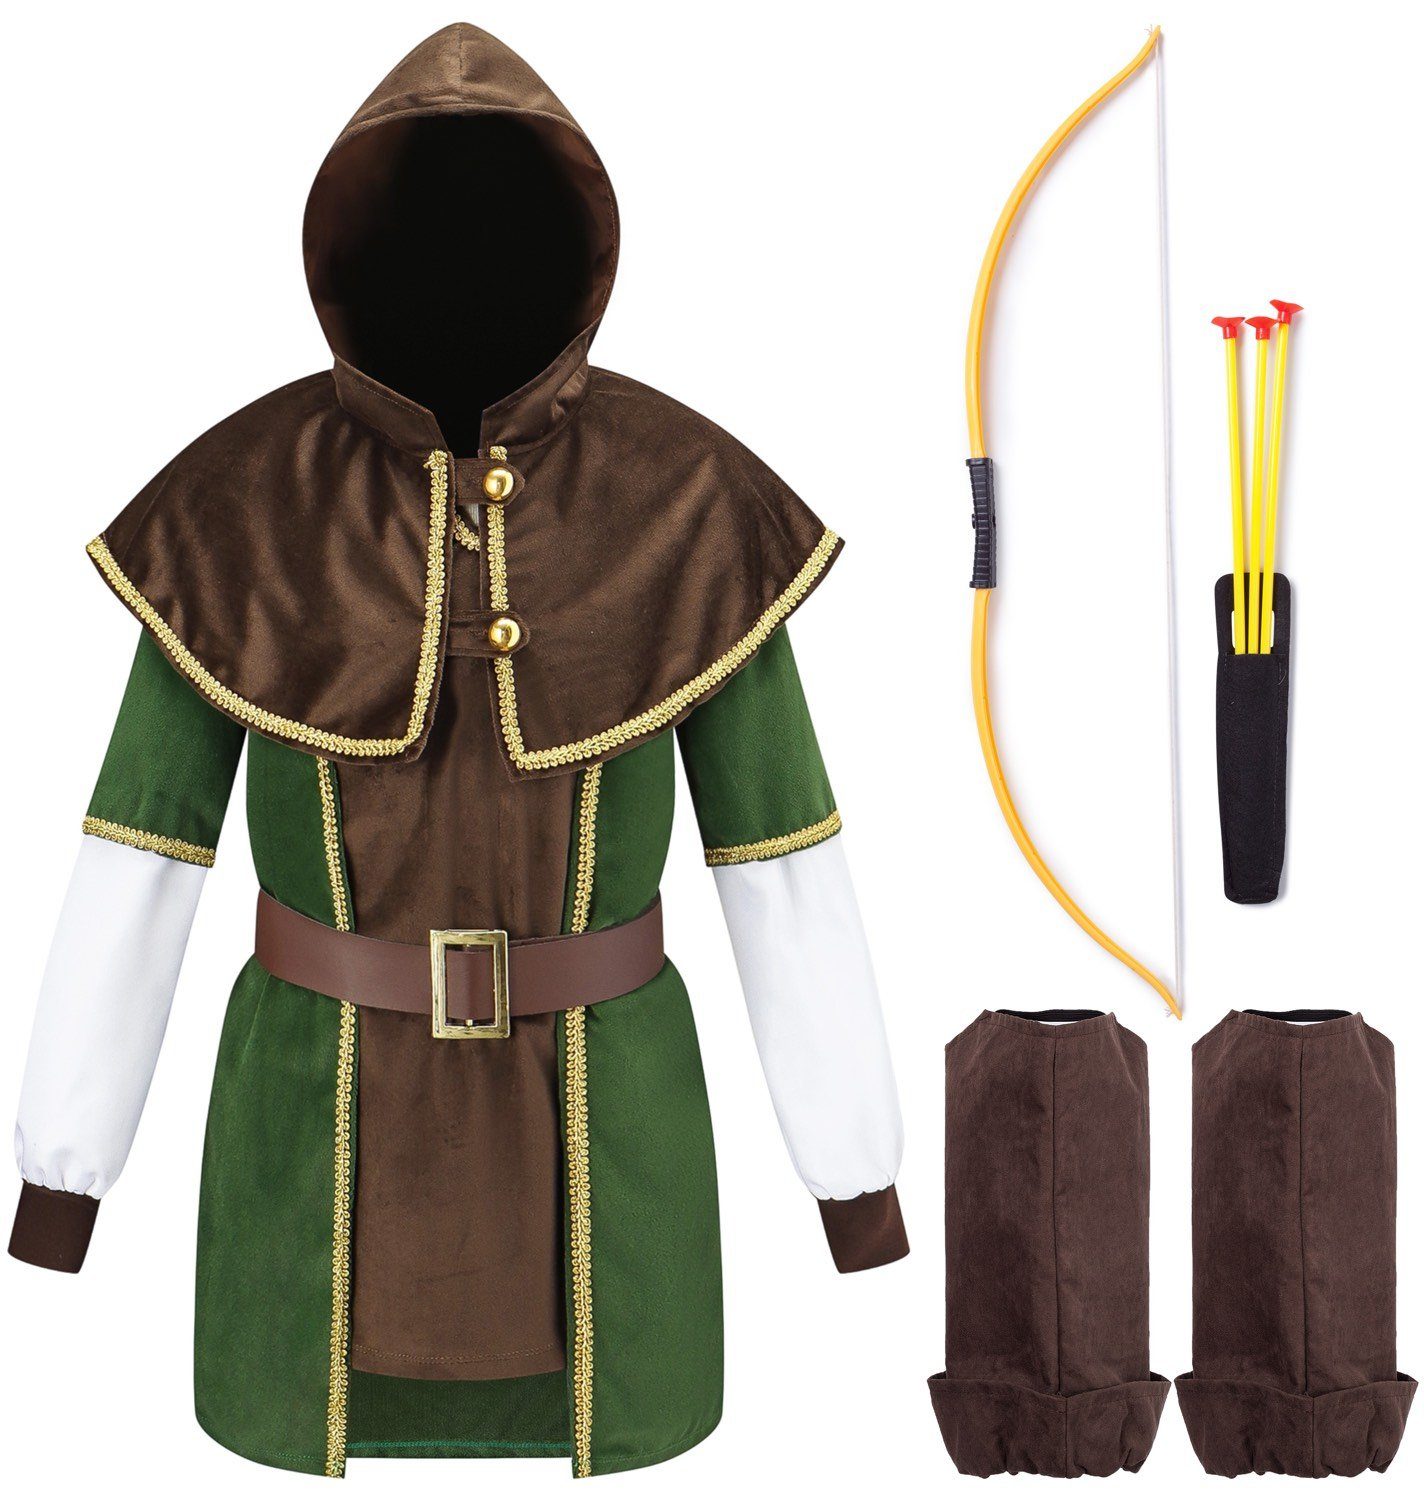 Corimori Ritter-Kostüm Robin Hood Karnevalskostüm Set, Kinder, braun/grün, Fasching, Kostüm, Mittelalterfest, Jungen, mit Pfeil und Bogen